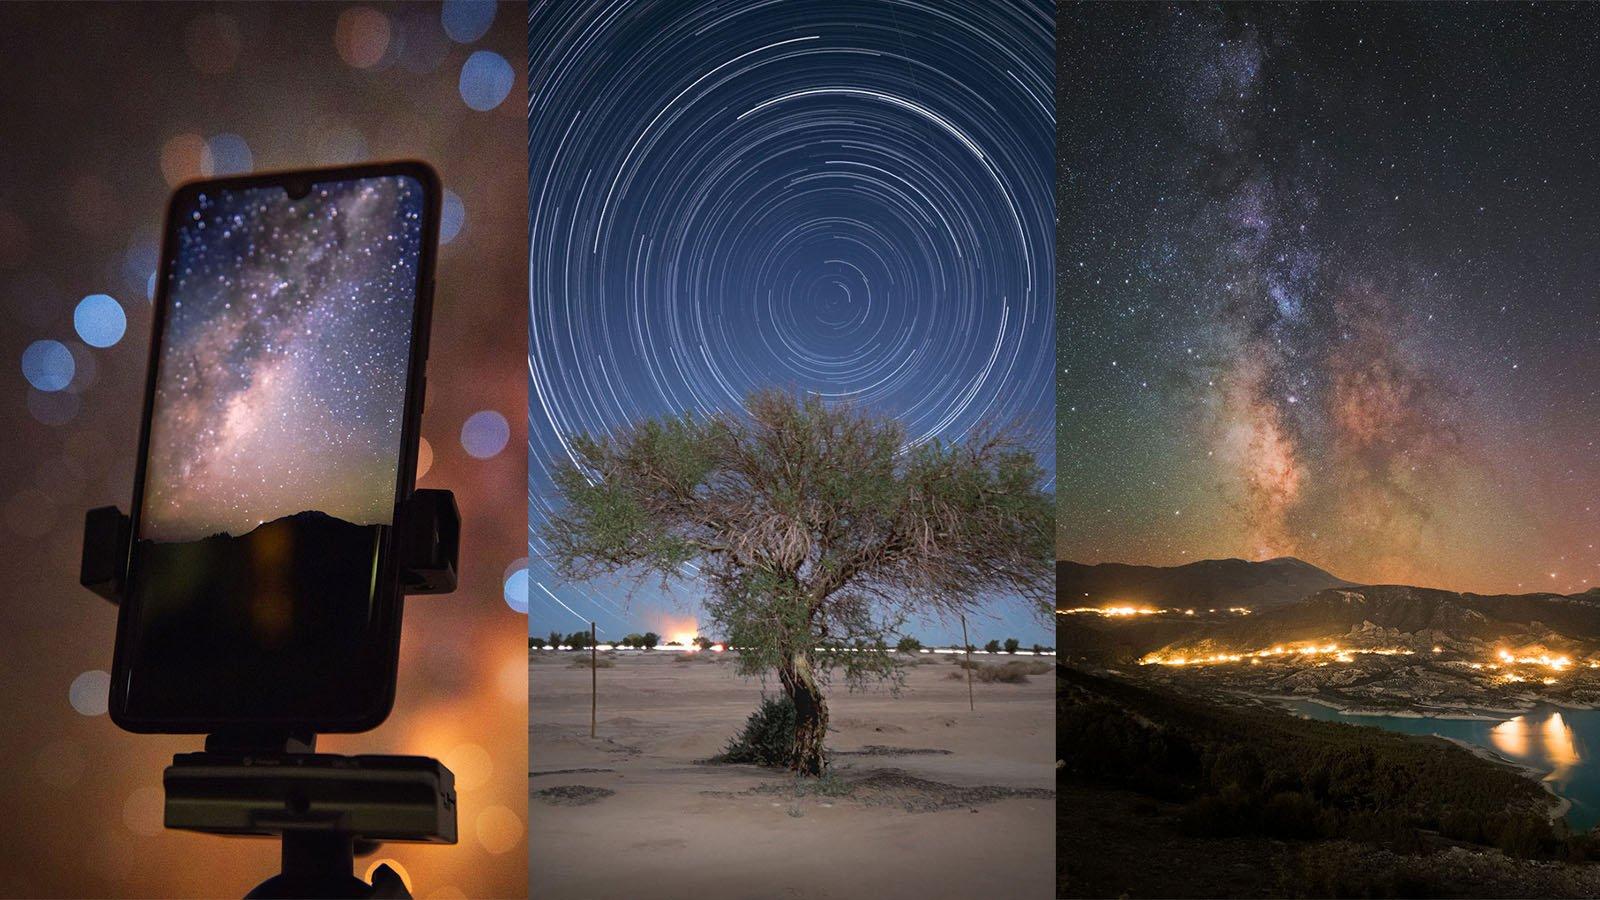 Bạn đam mê thiên văn học và đang tìm kiếm một chiếc điện thoại để chụp ảnh thiên văn trời đêm? Đừng bỏ qua chiếc điện thoại đầy tiềm năng trong việc chụp ảnh thiên văn trời đêm. Cùng khám phá thêm về tính năng chụp ảnh thiên văn trên smartphone bạn nhé.